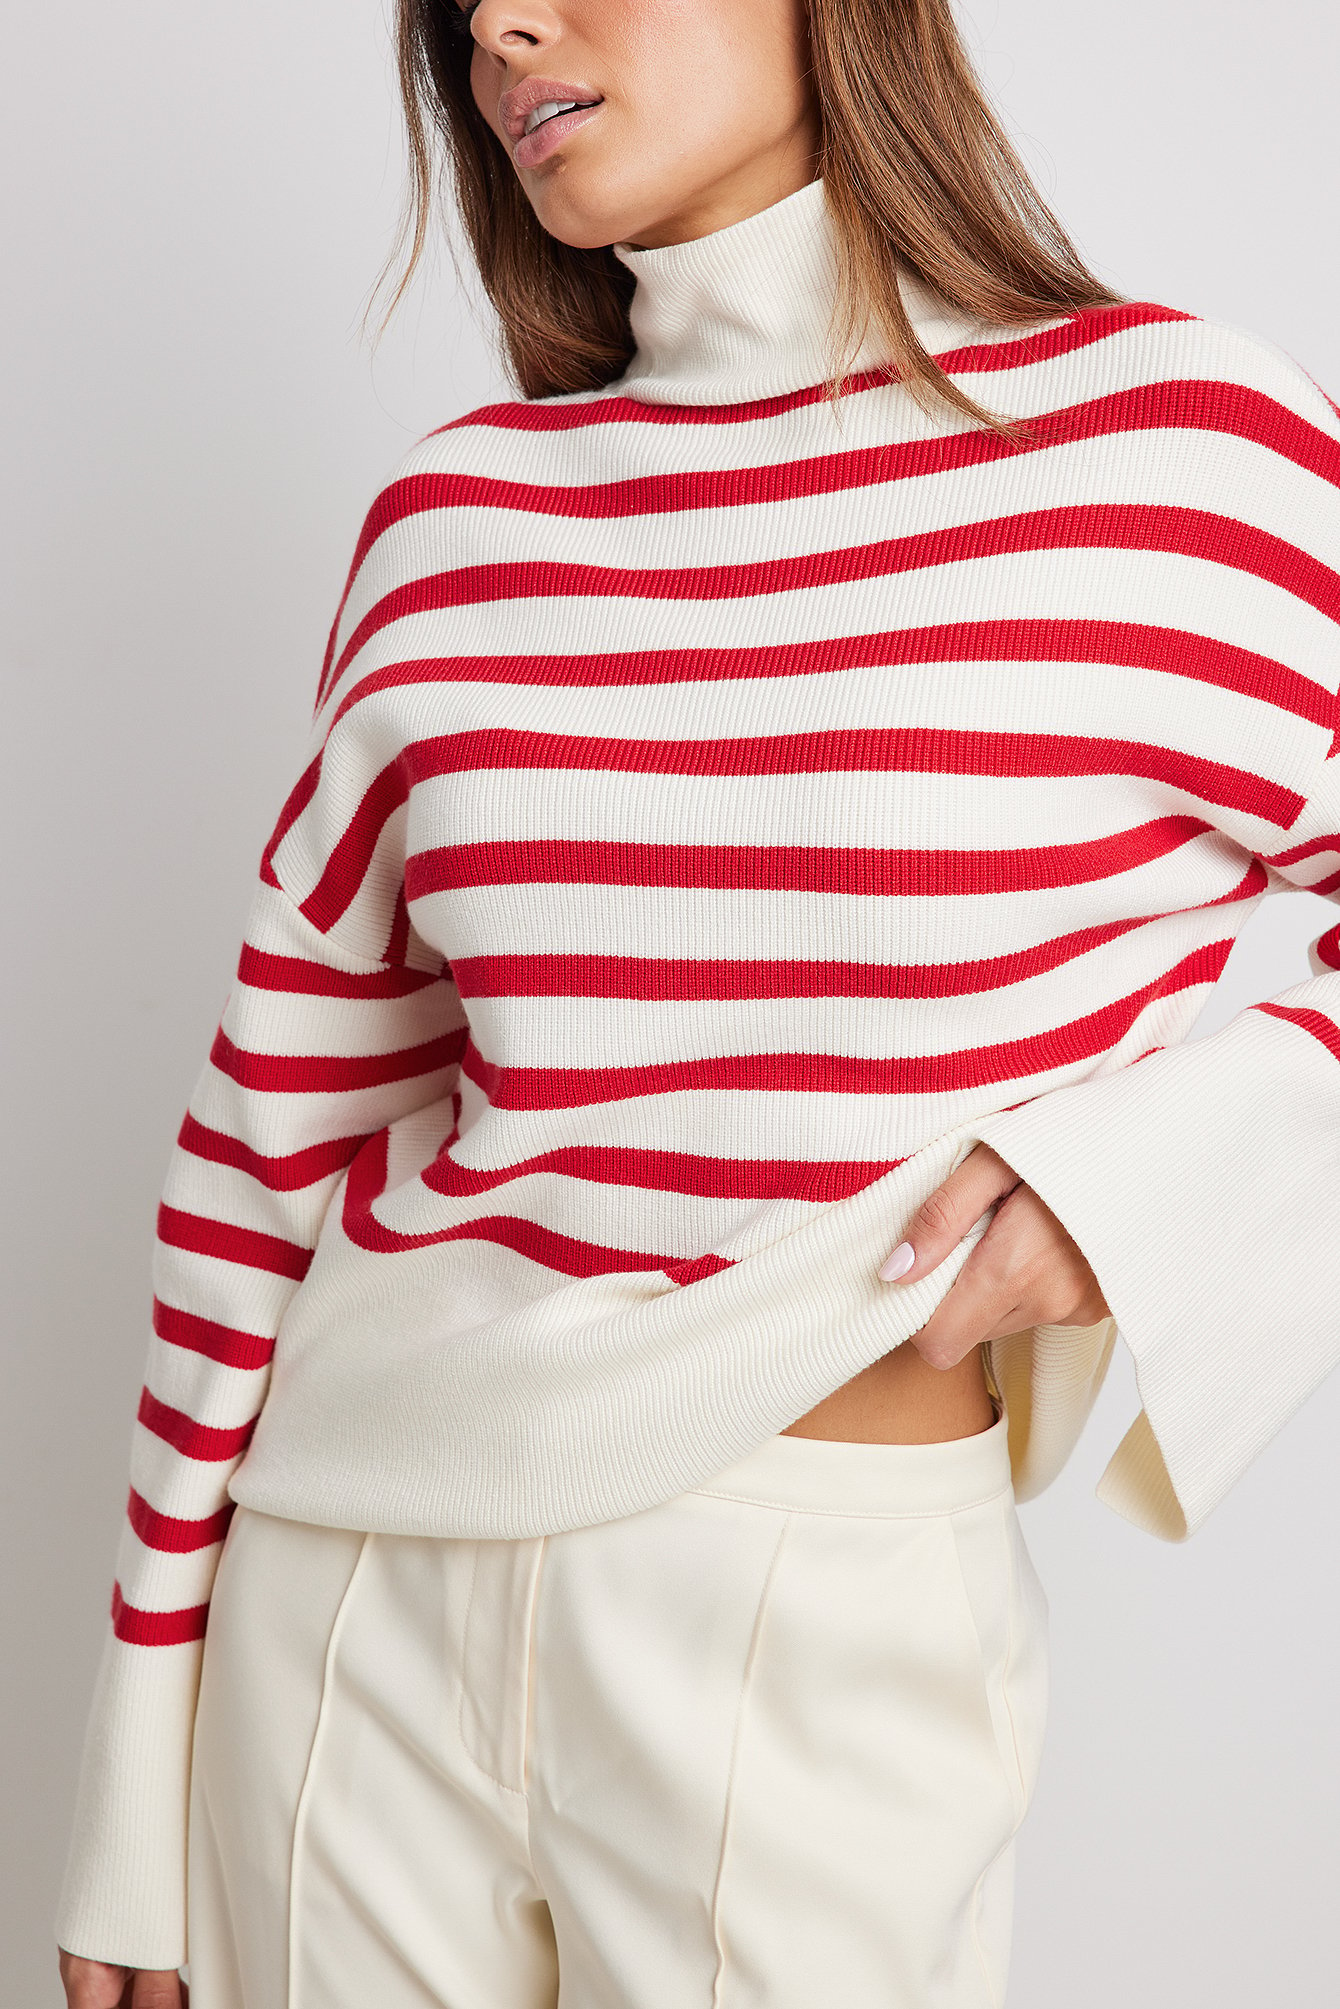 Trendyol Synthetisch High Neck Striped Knitted Sweater Dames Kleding voor voor Truien en gebreide kleding voor Coltruien 